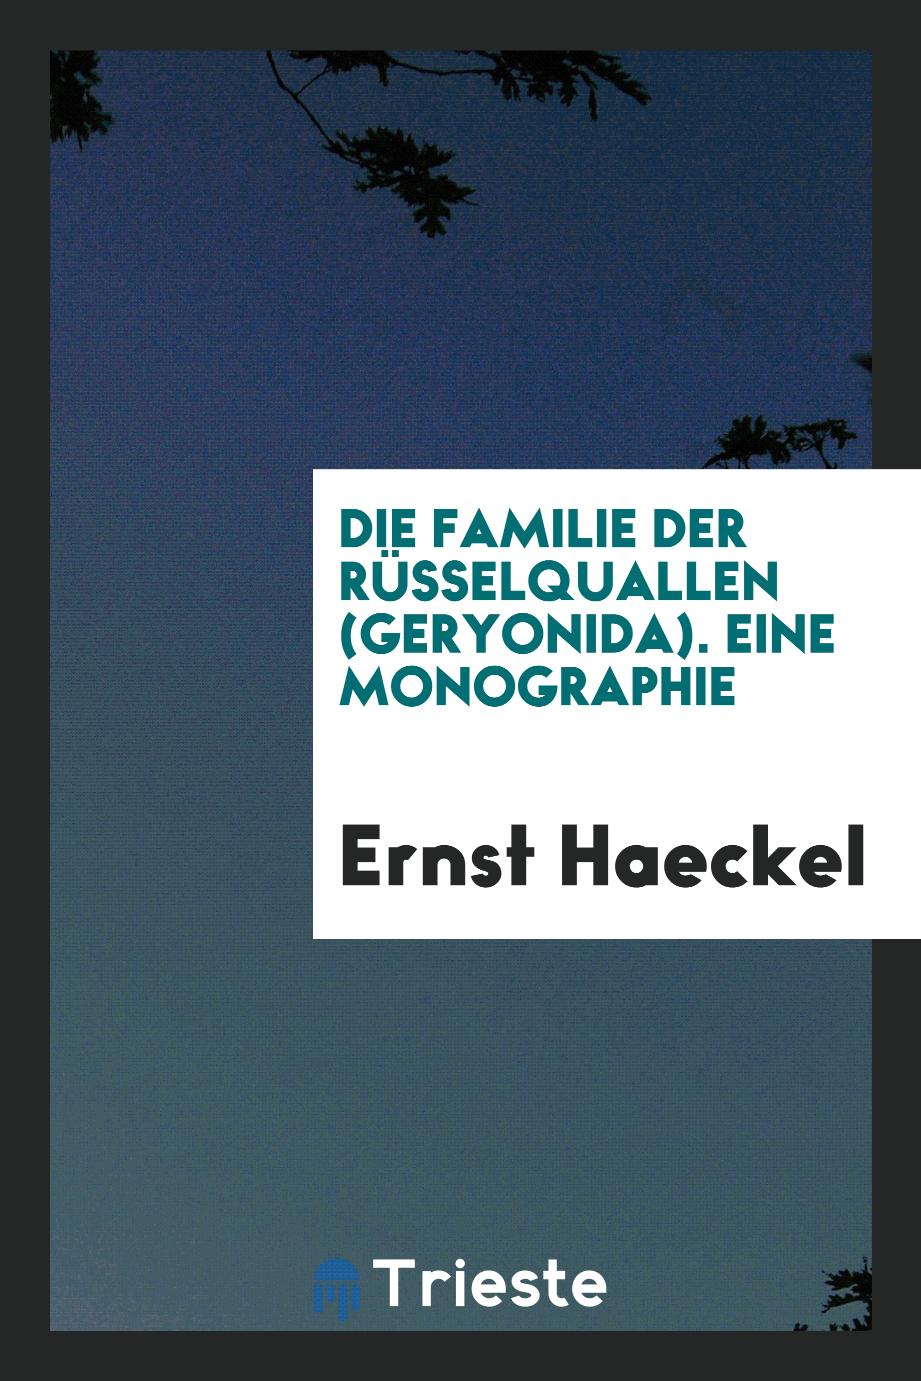 Ernst Haeckel - Die familie der rüsselquallen (Geryonida). Eine monographie